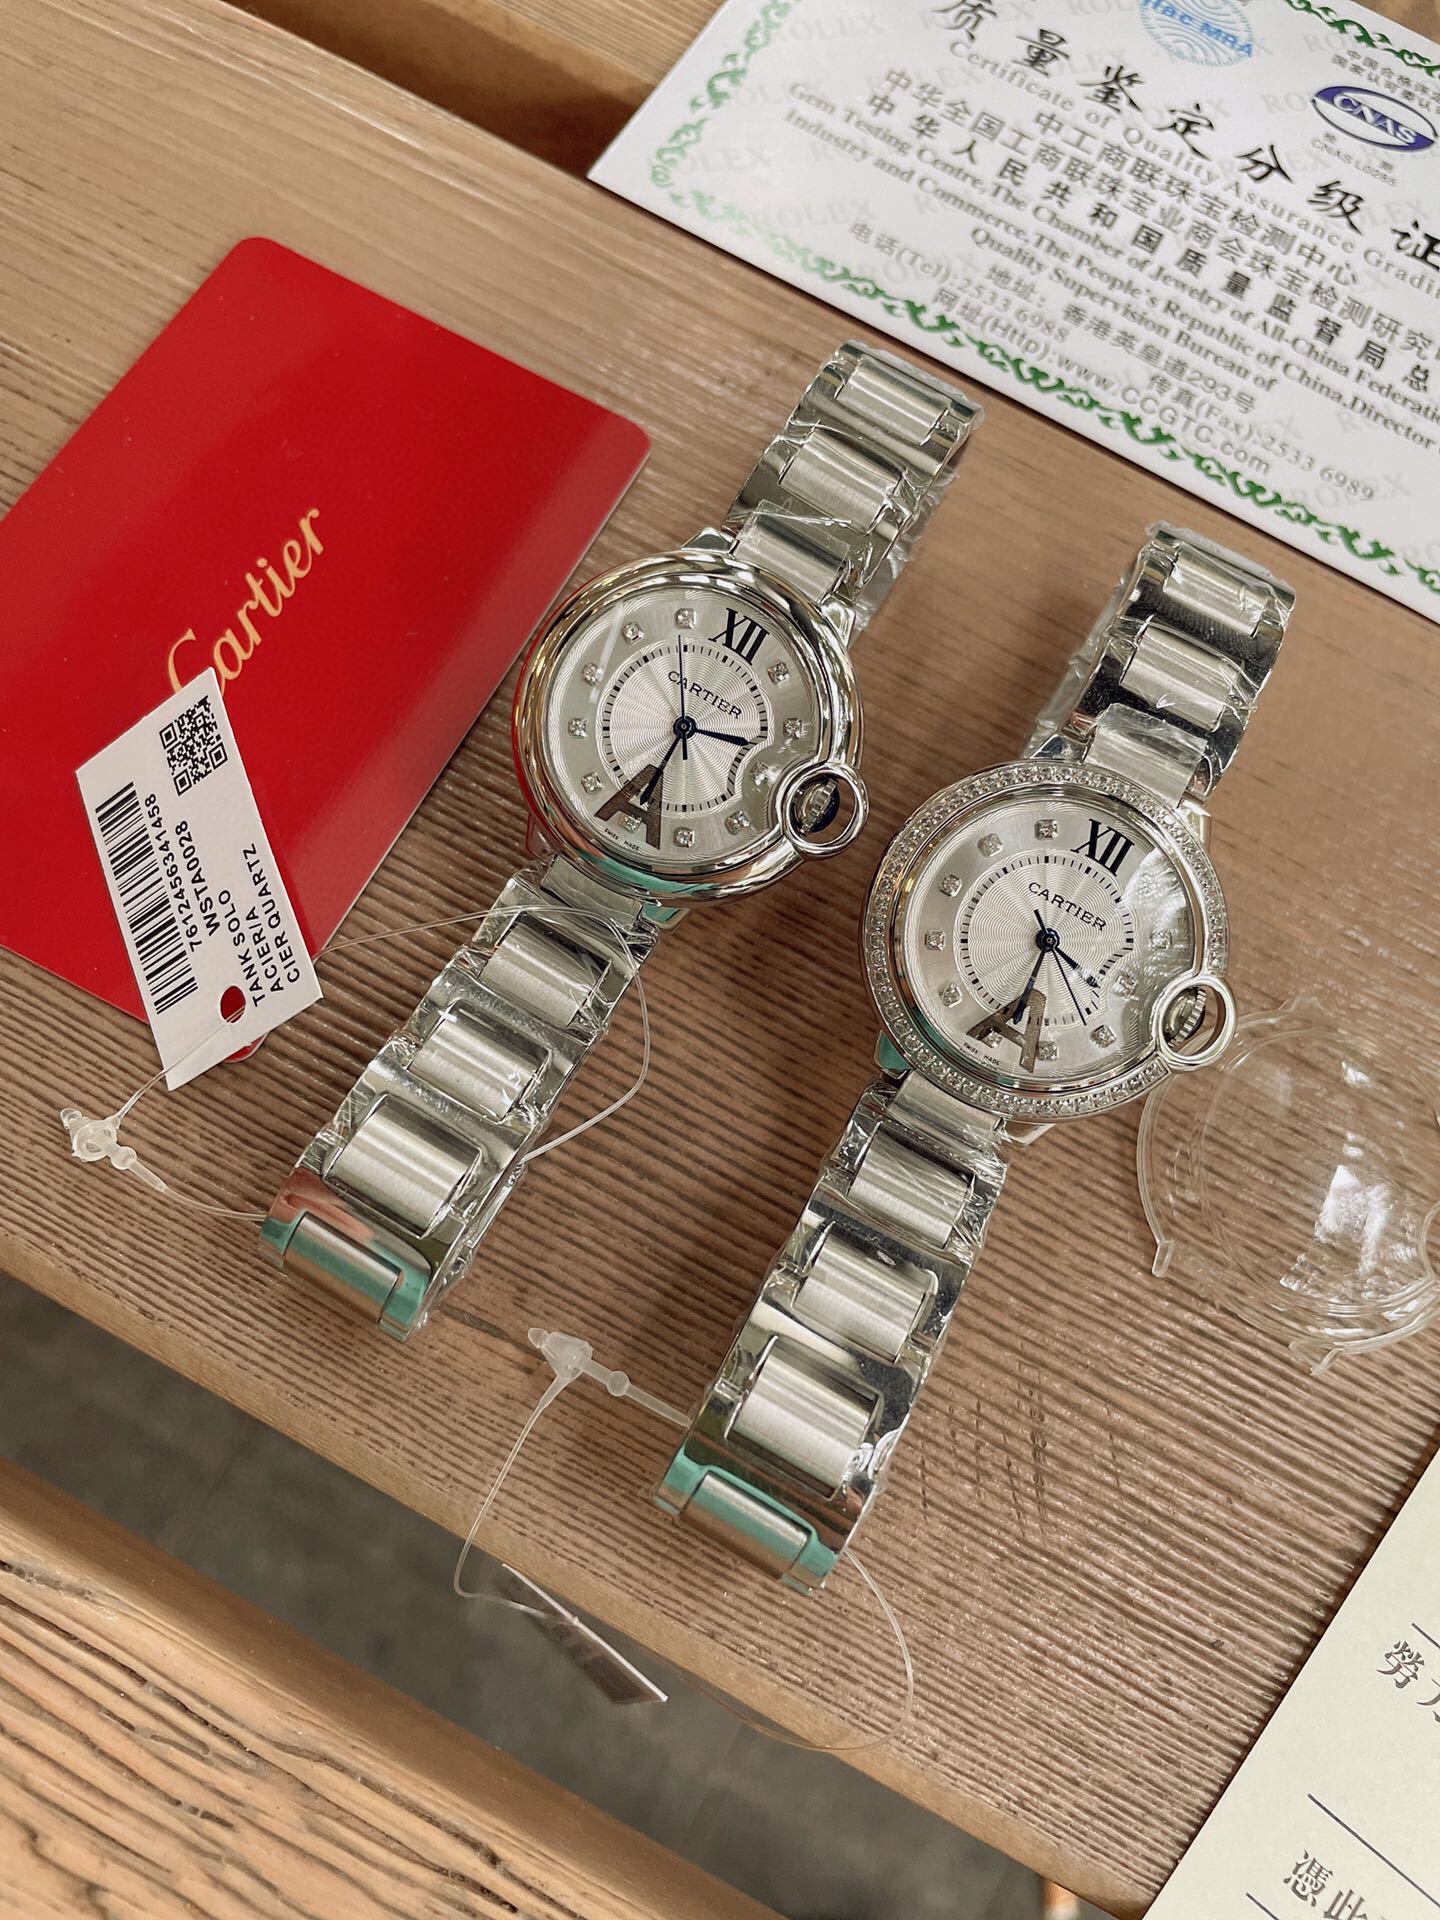 「ダイヤモンドある」CARTIERカルティエ 時計 中身コピー フランス 薄い腕時計 軽量 レディース 最新商品 キラキラ _2